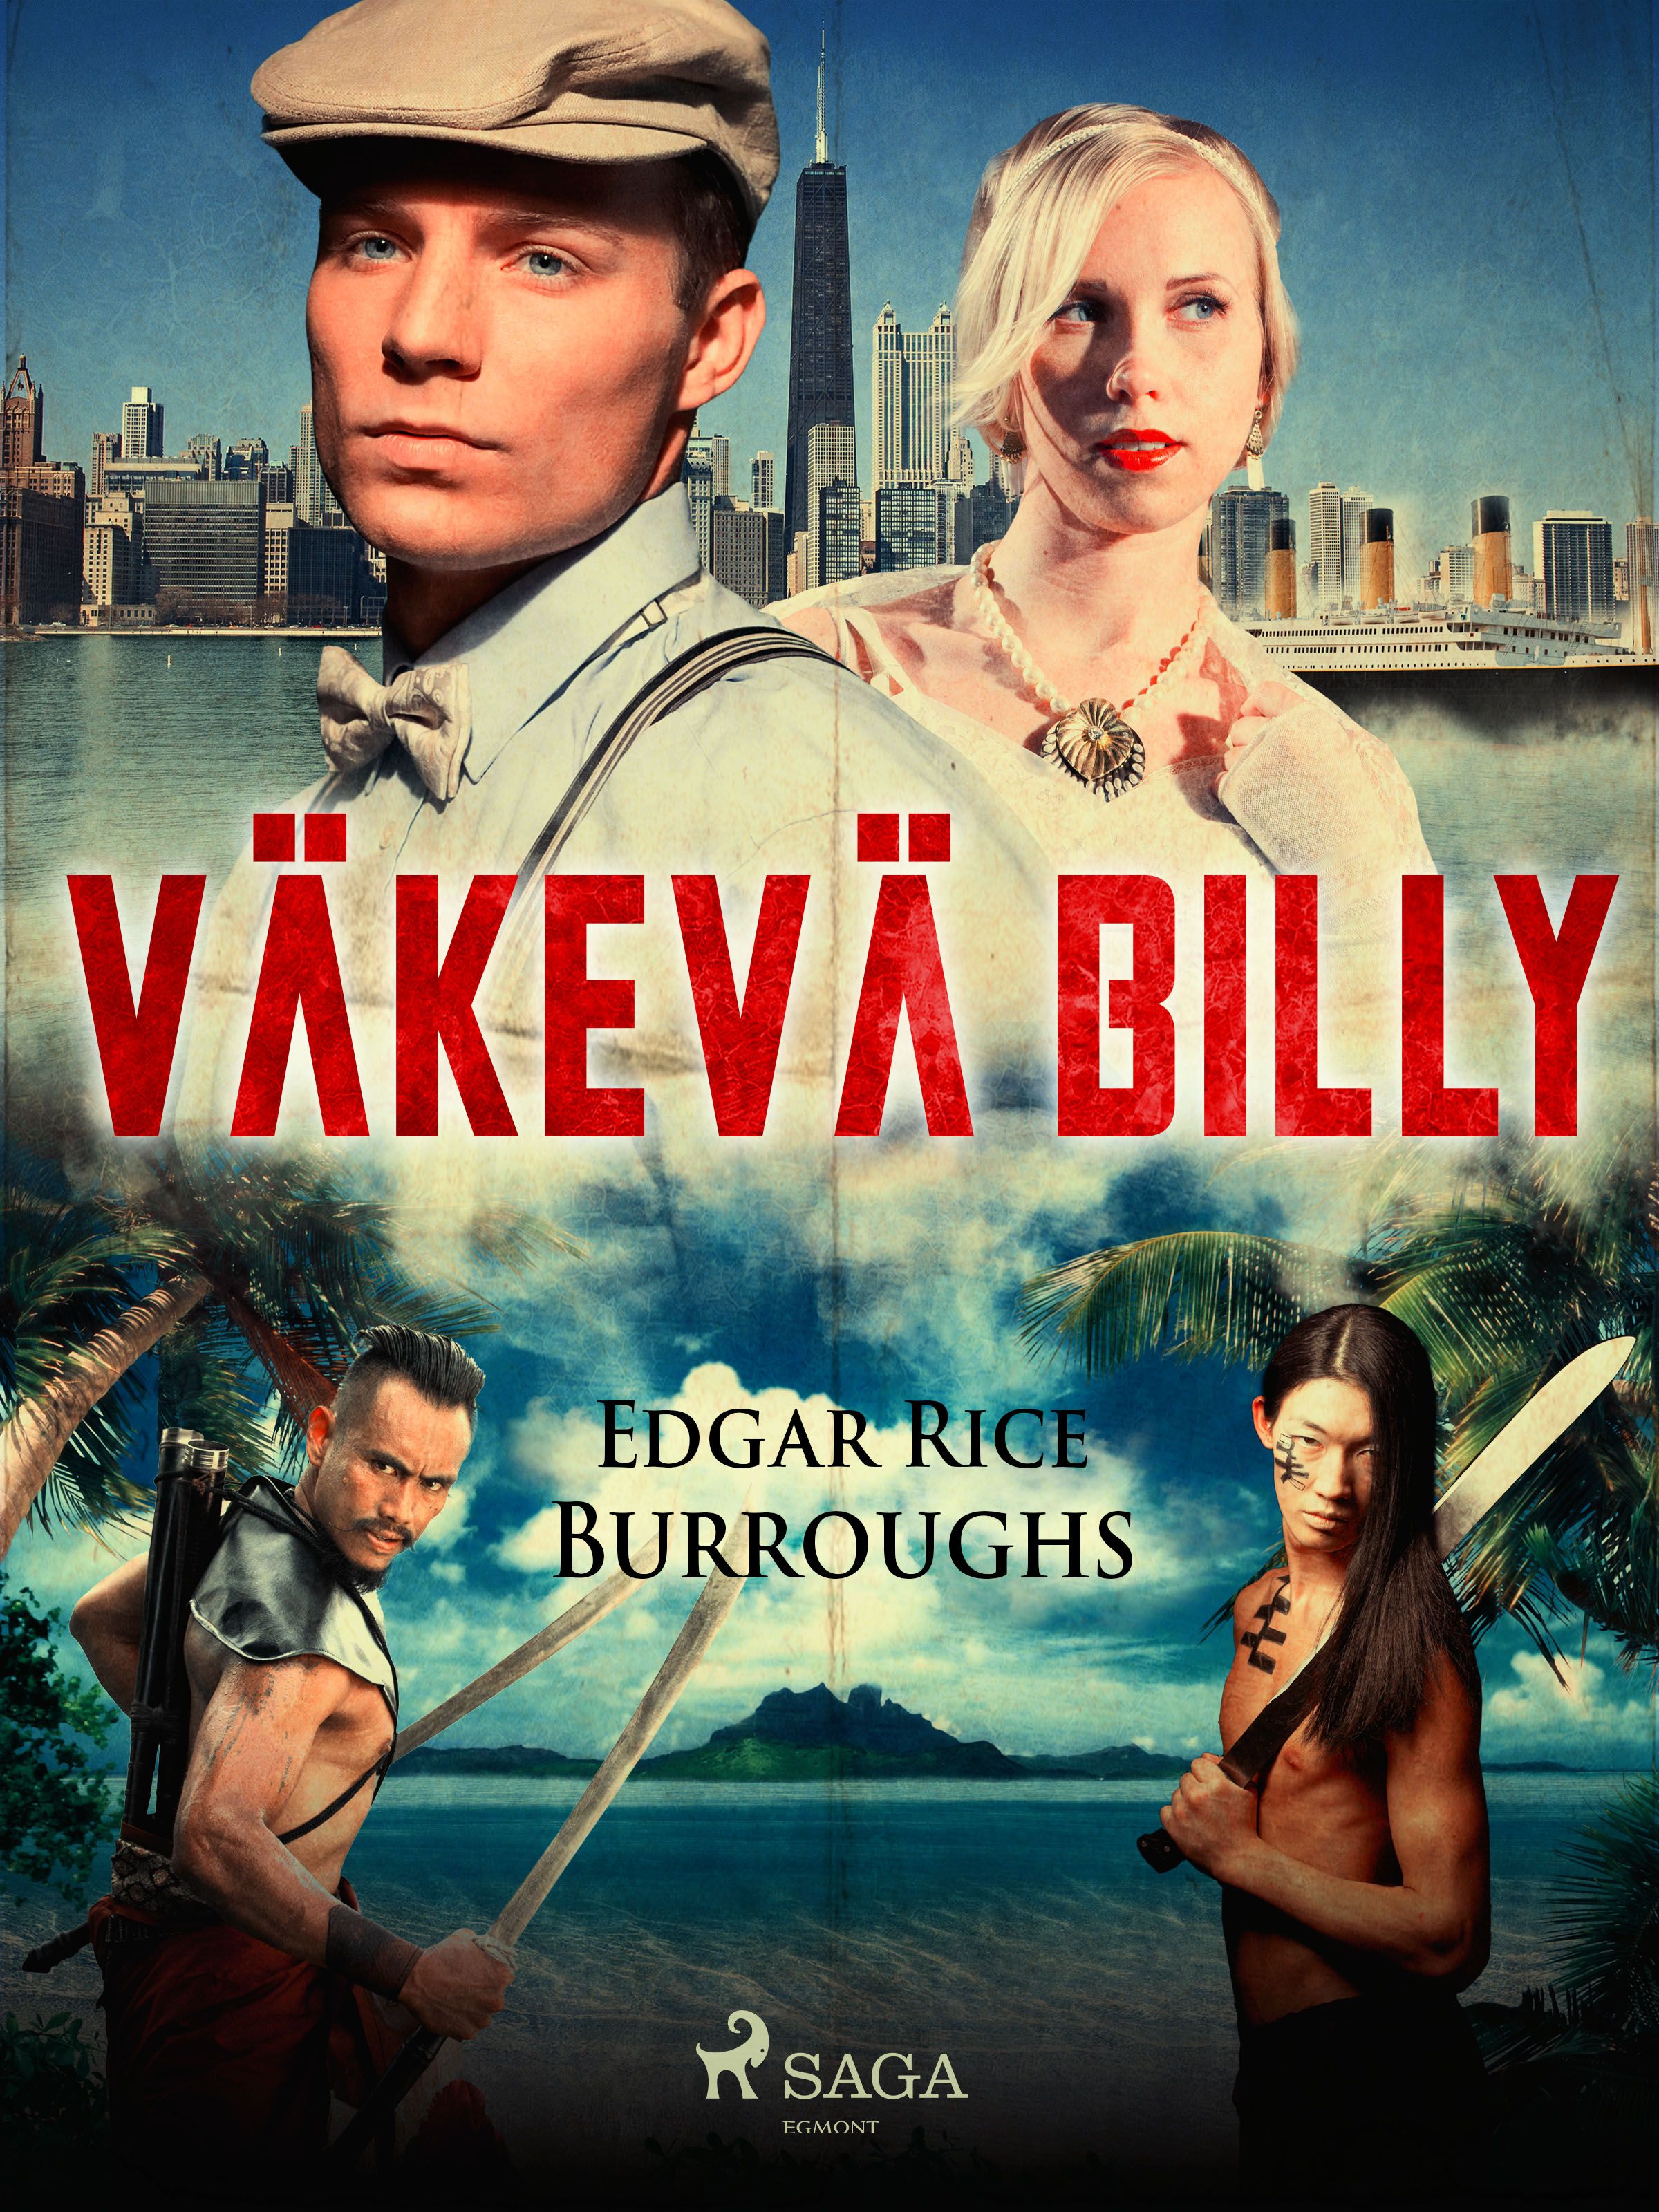 Väkevä Billy, e-bog af Edgar Rice Burroughs